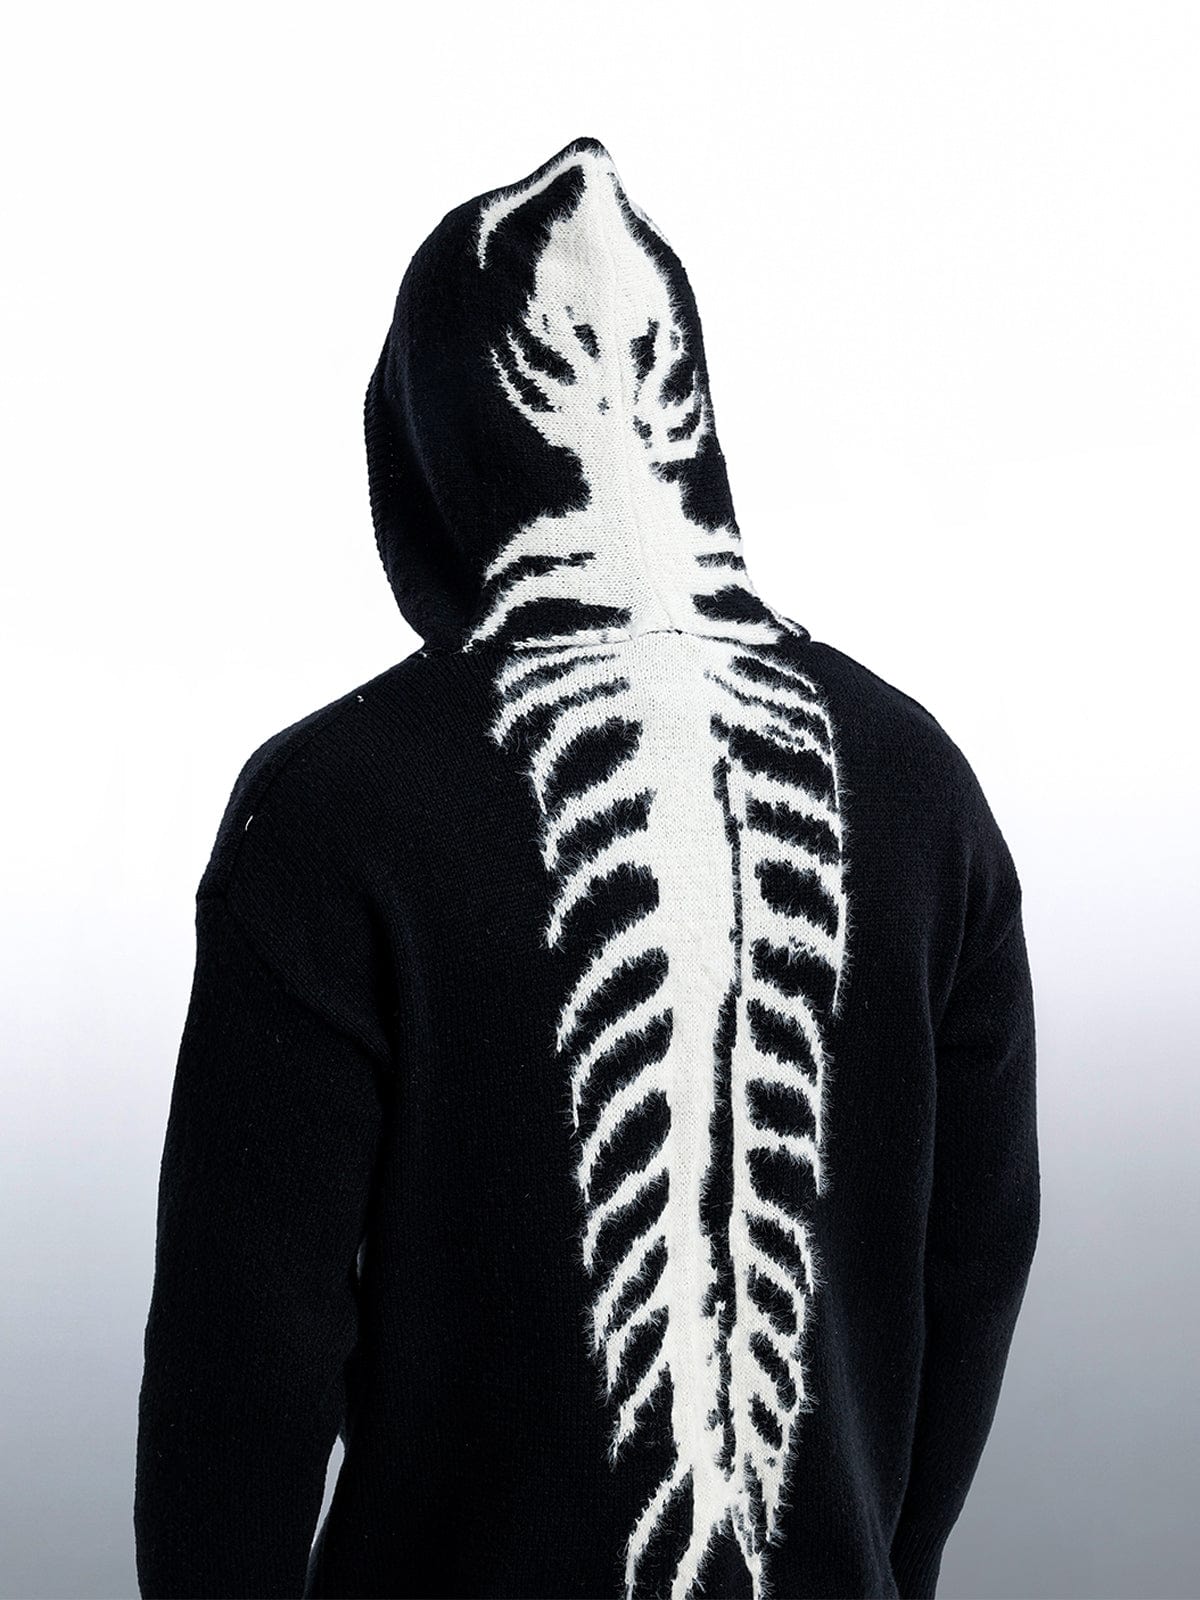 NEV Tailbone Pattern Jacquard Sweater Hoodie